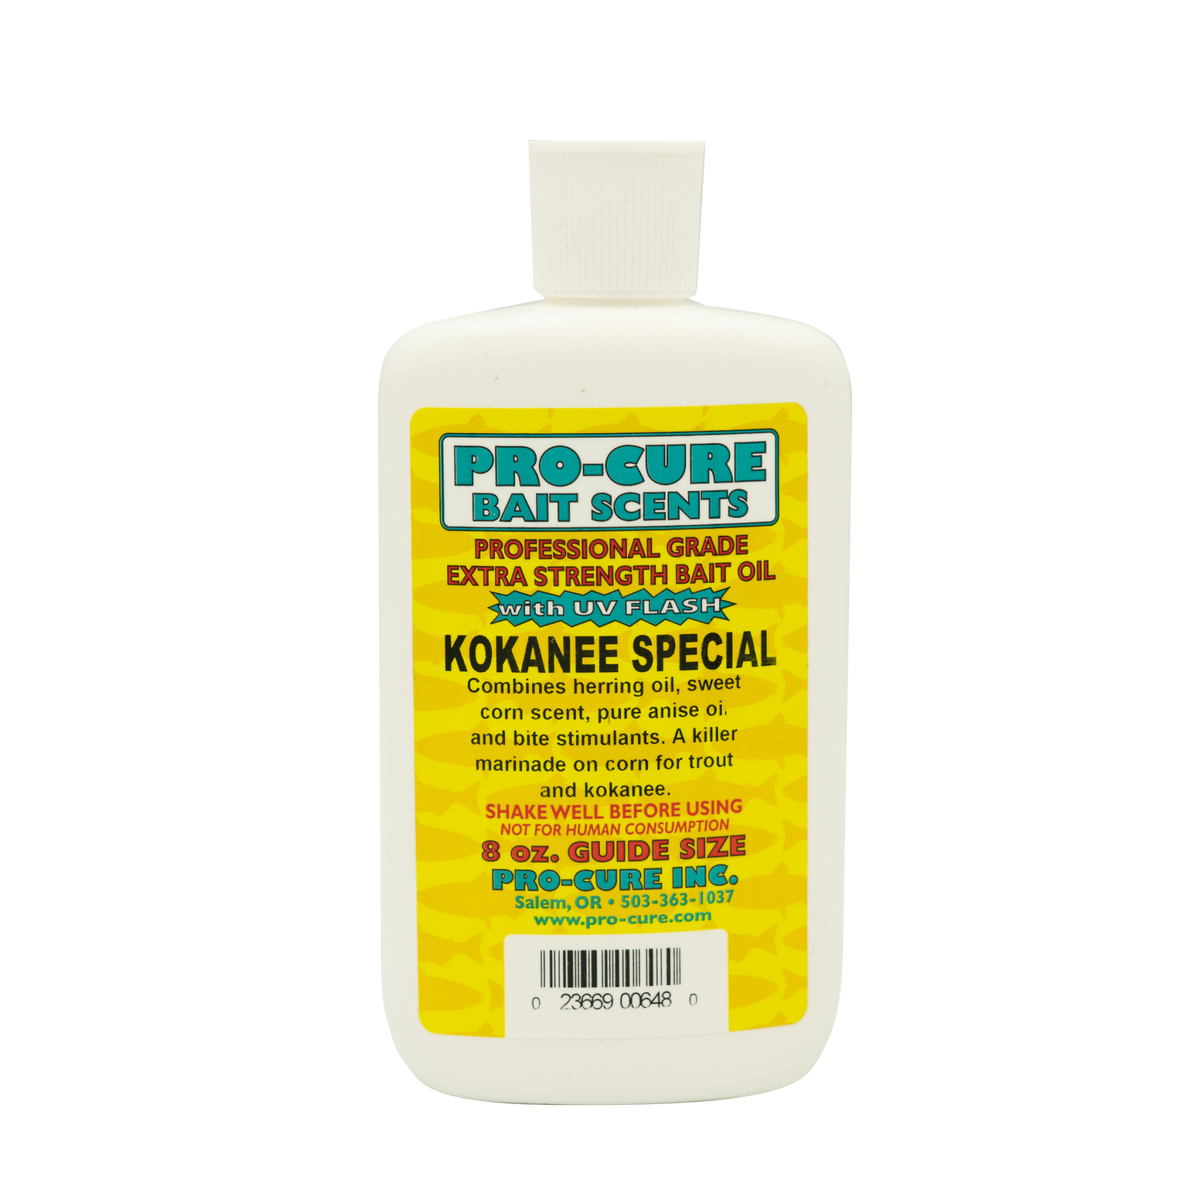 KOKANEE SPECIAL BAIT OIL – Pro-Cure, Inc